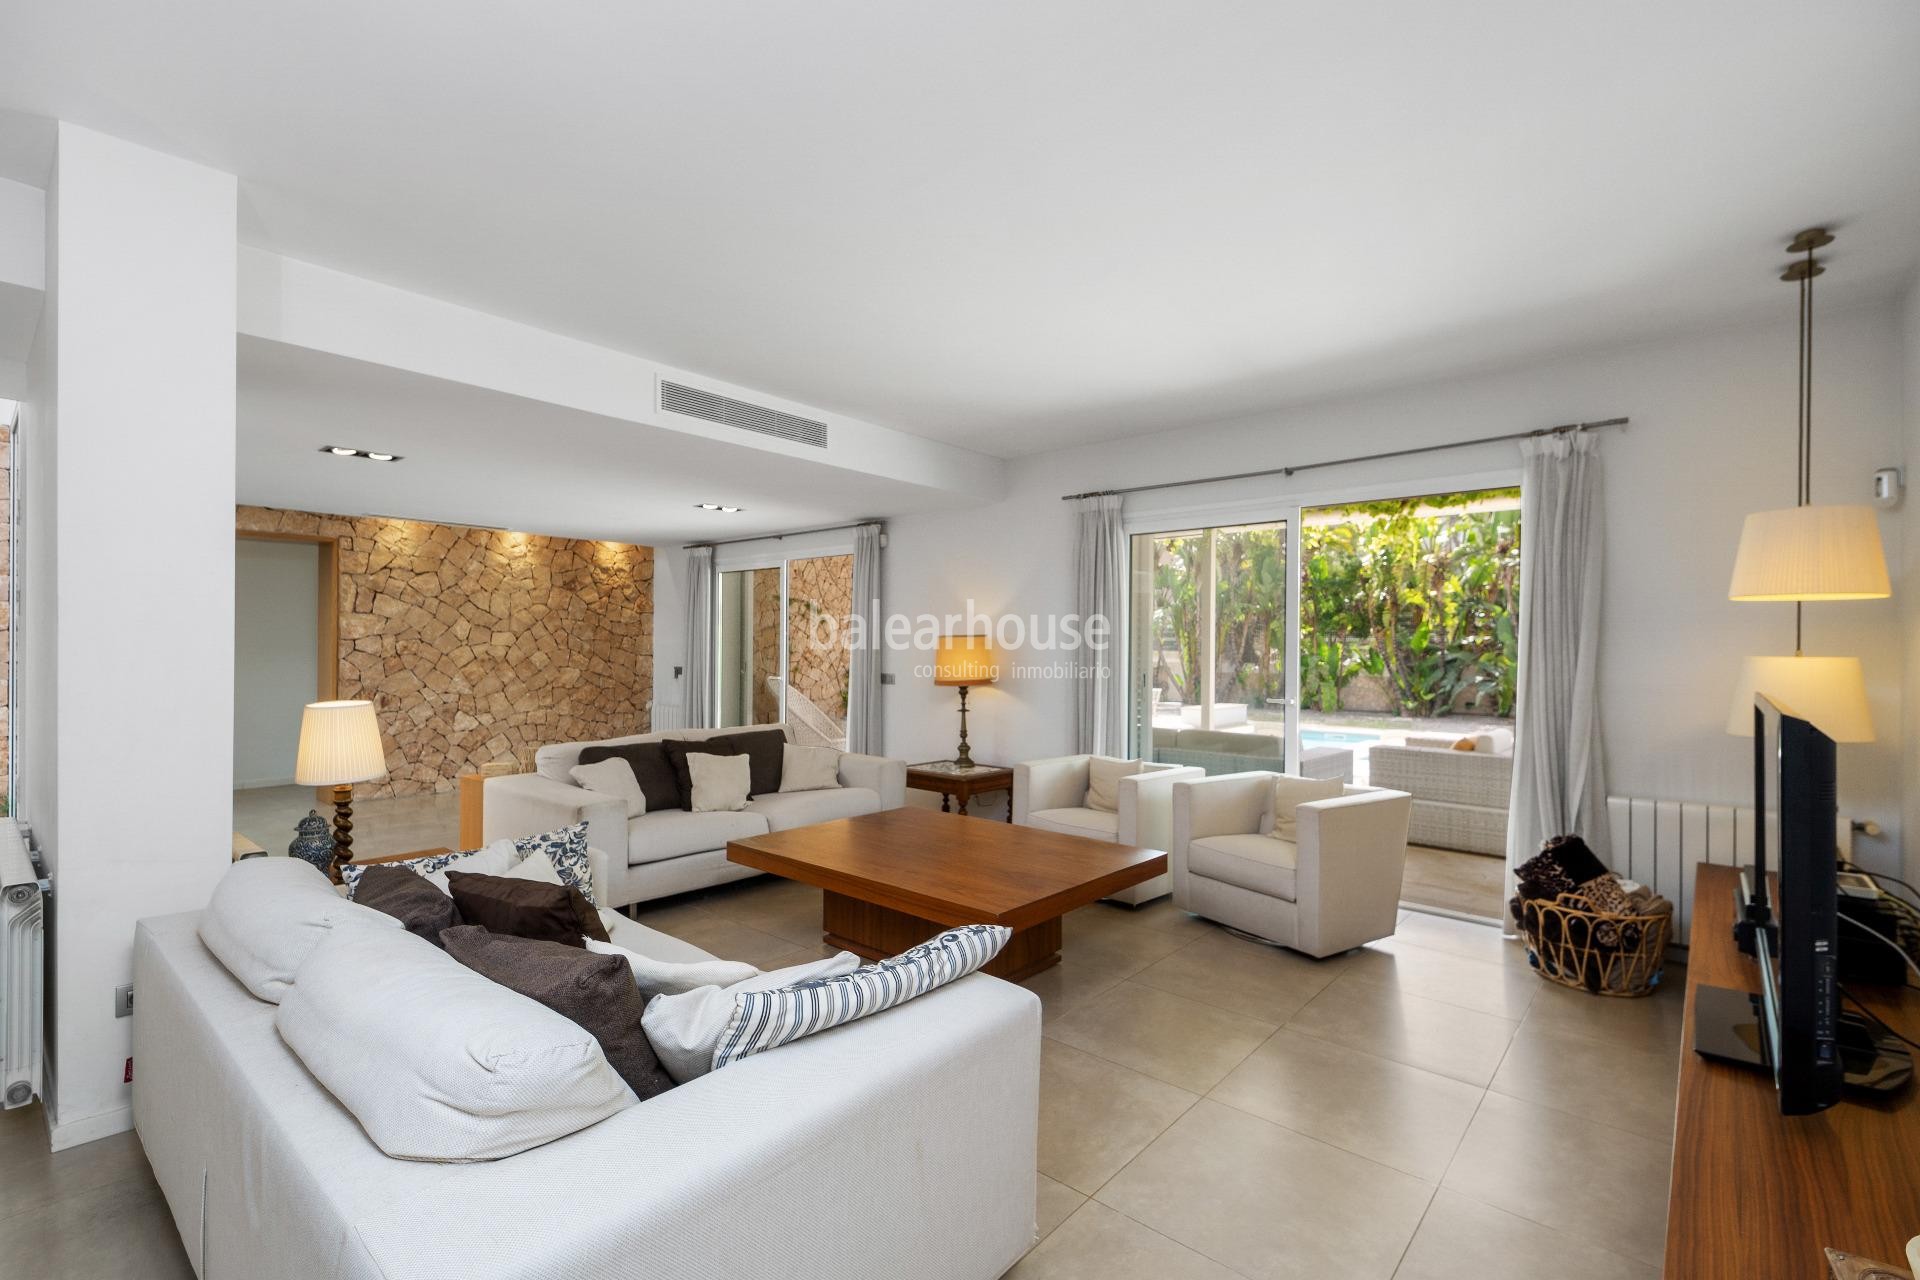 Excelente villa moderna llena de luz con terrazas y gran piscina cerca de la playa de Palma